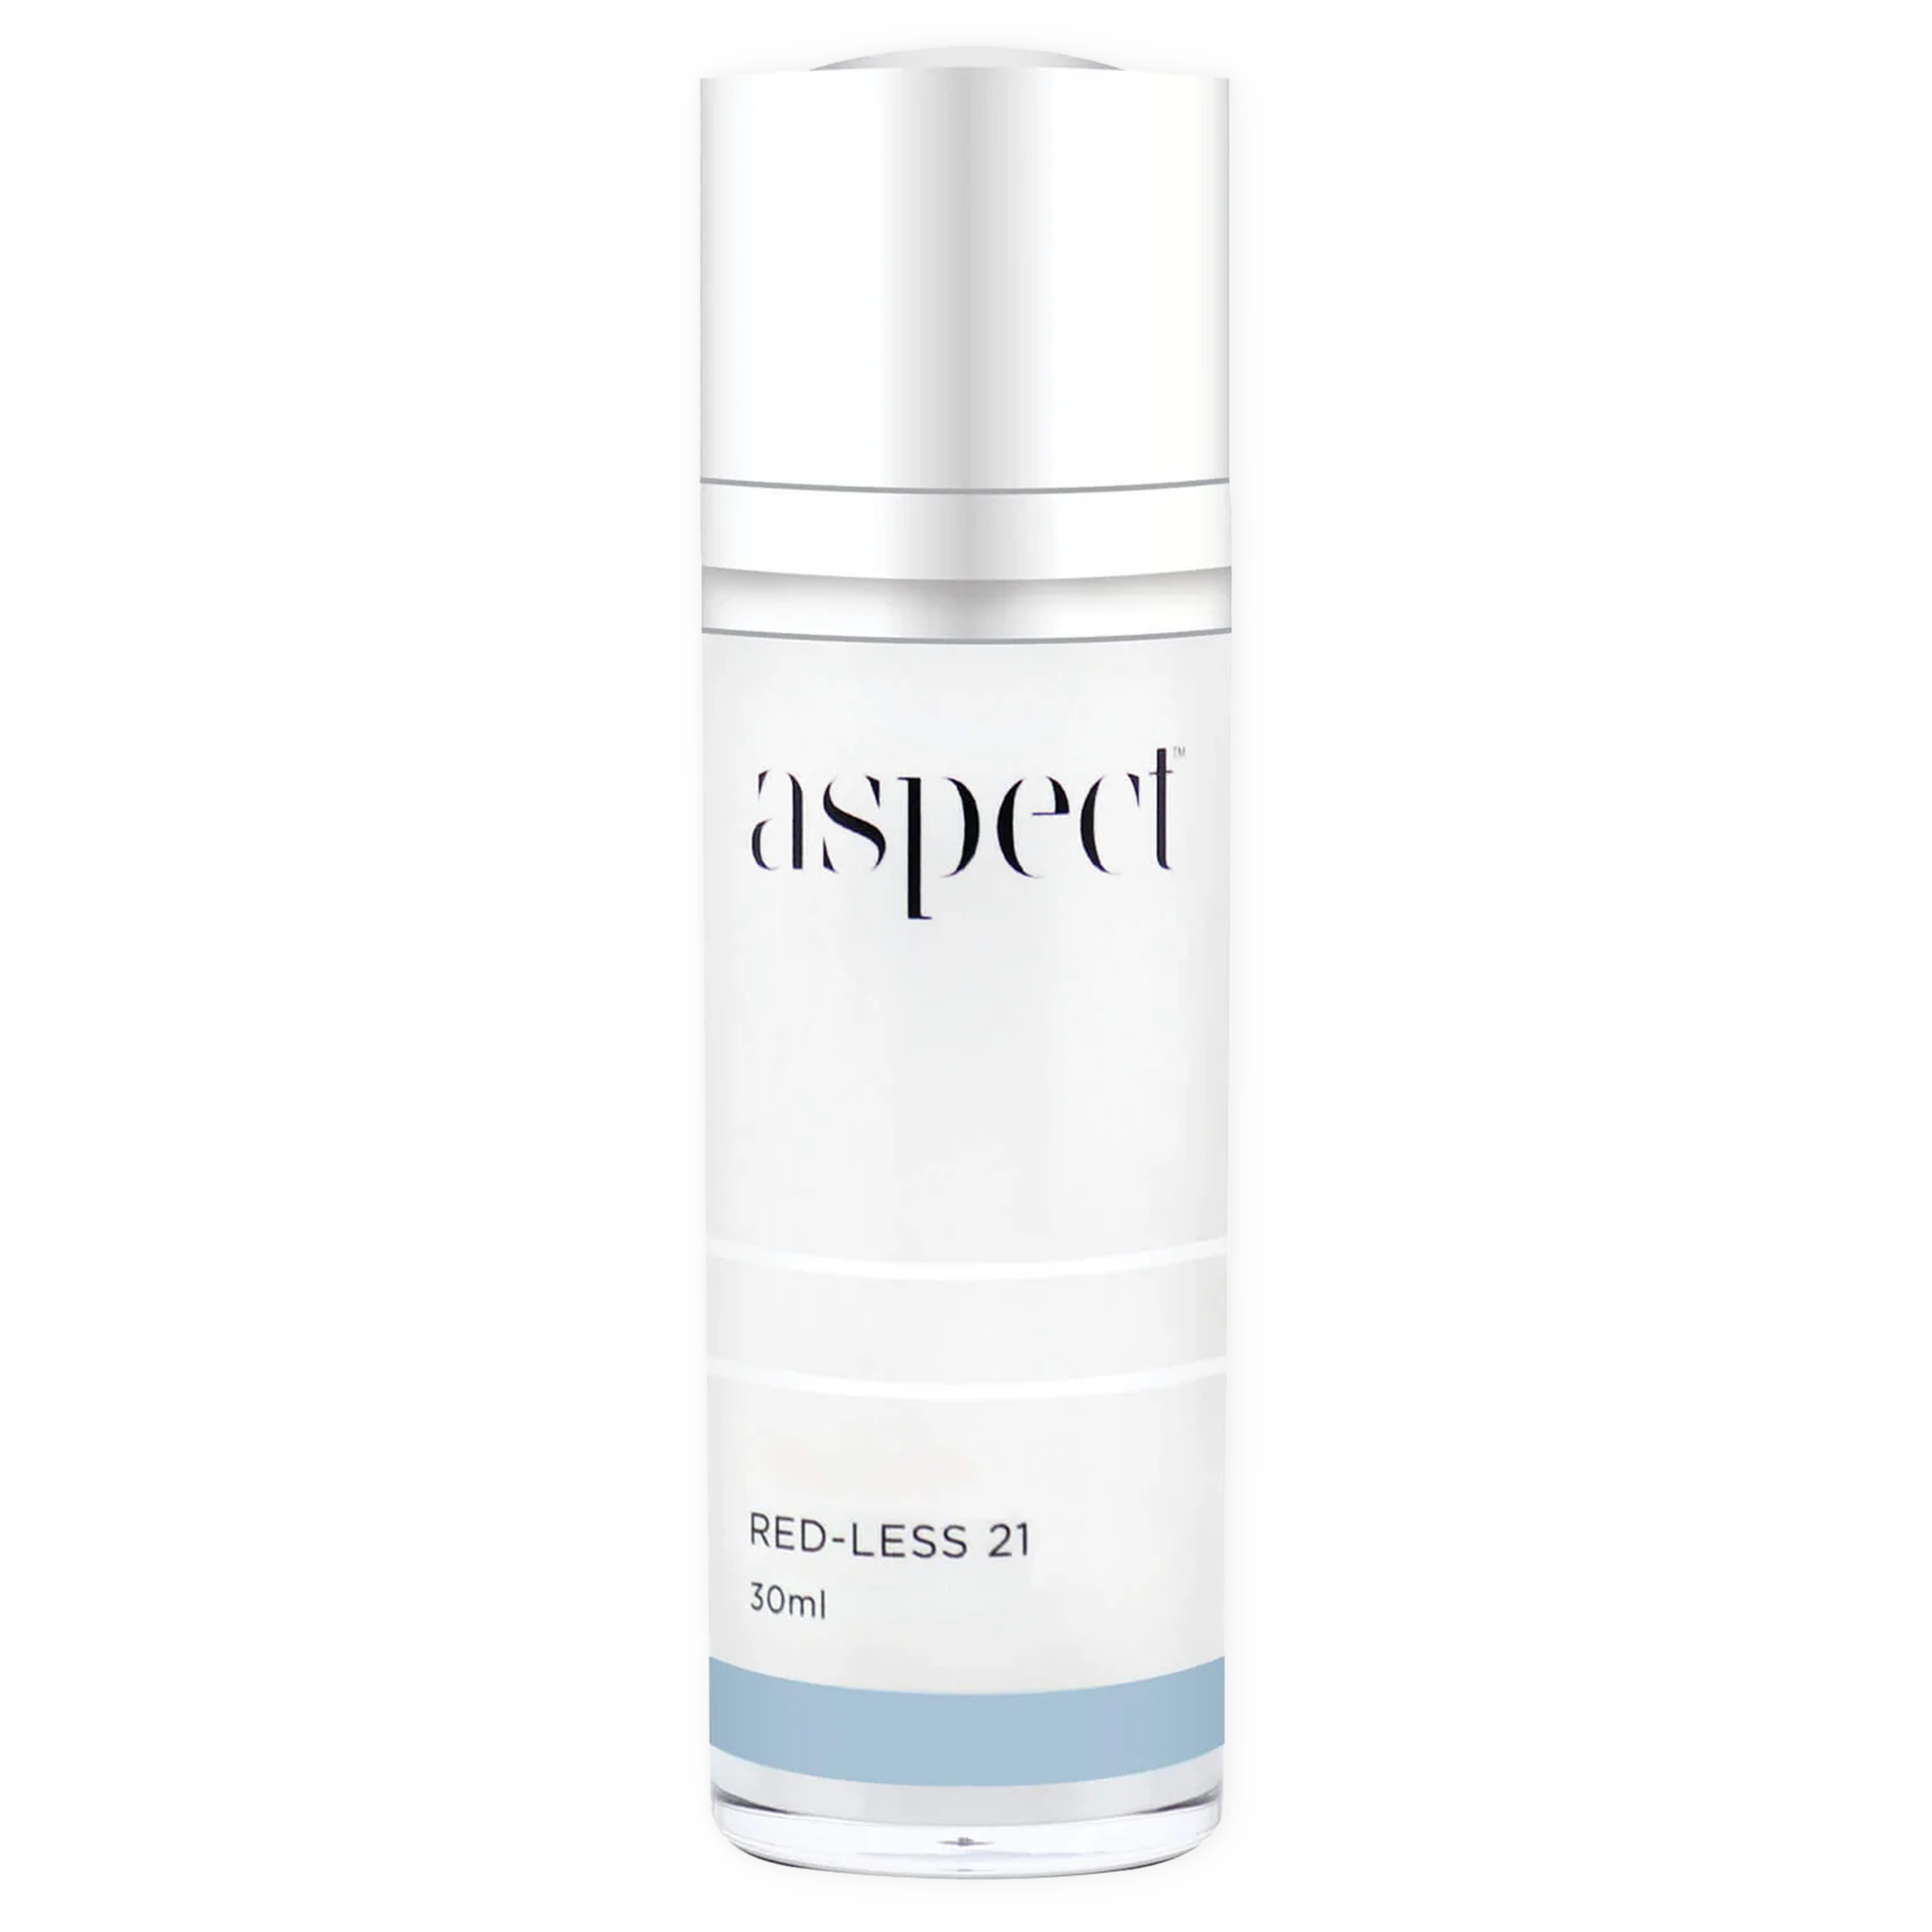 Aspect Red-Less 21 30ml multi-purpose oil  | Atone Skin